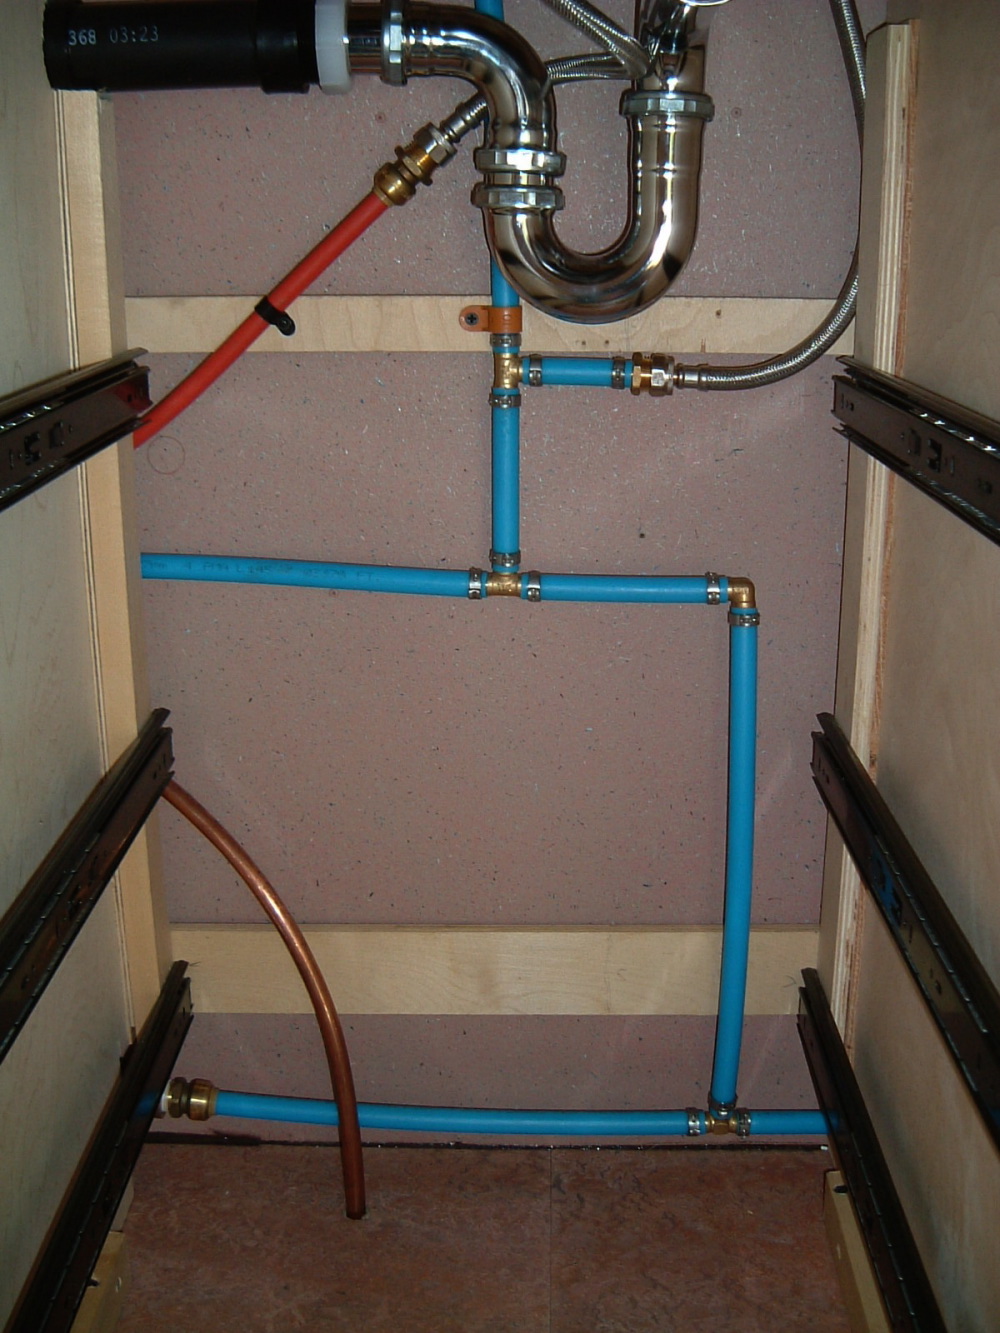 Plumbing - Vintage Airstream bathroom sink drain plumbing diagram 